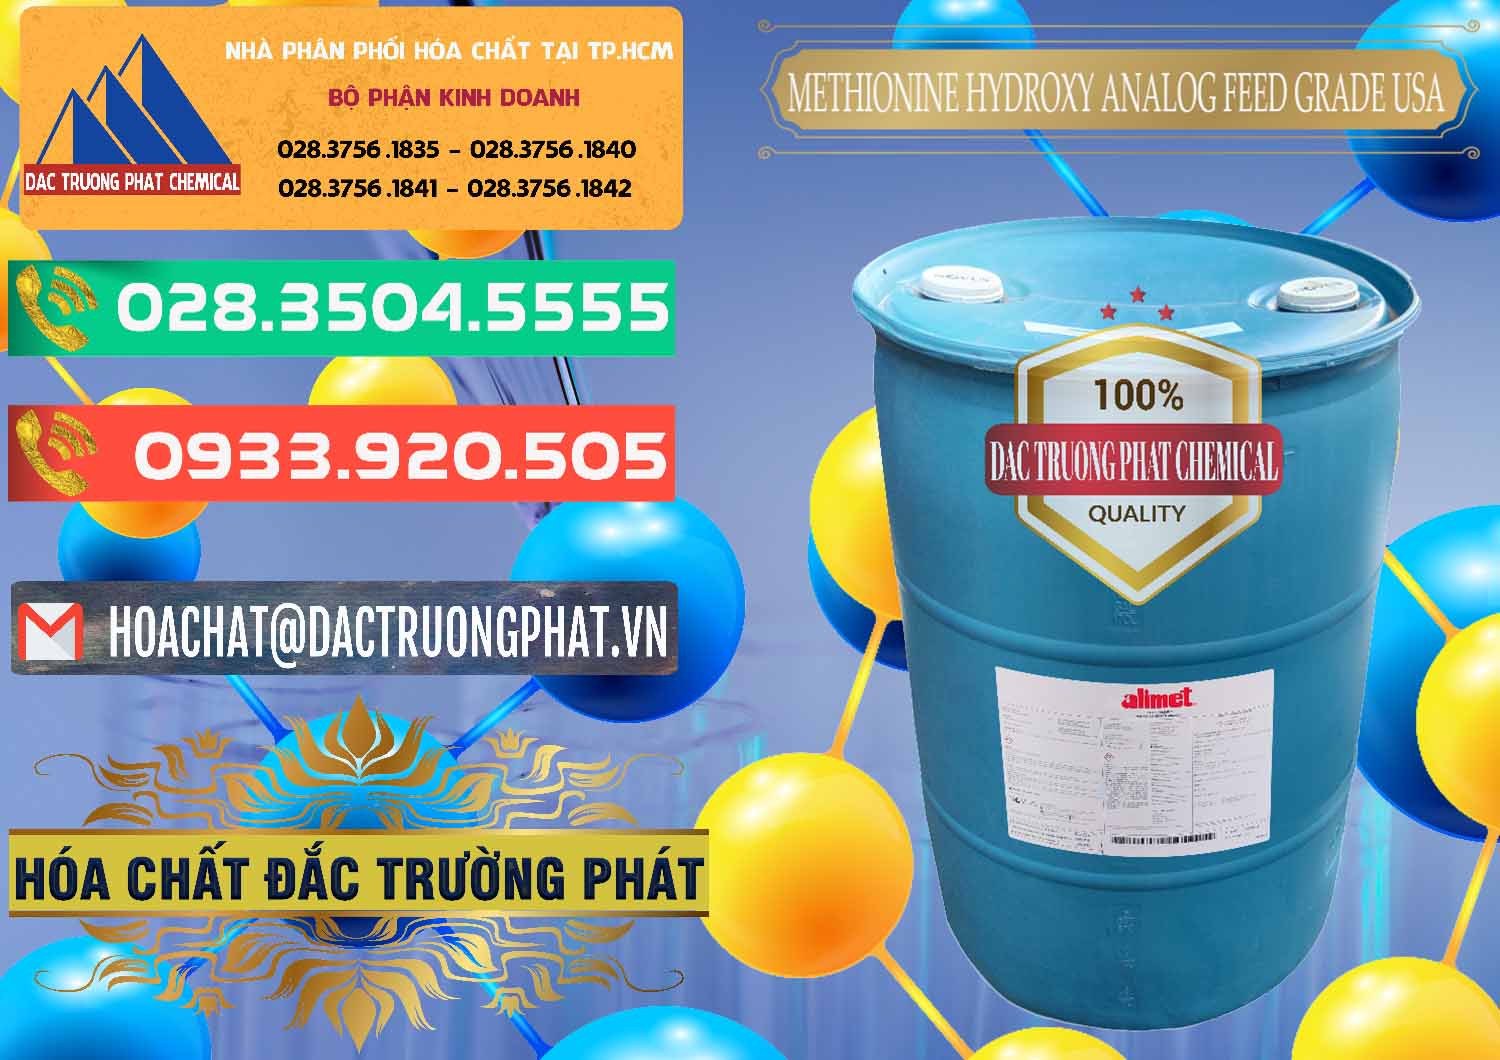 Cty phân phối và bán Methionine Nước - Dạng Lỏng Novus Alimet Mỹ USA - 0316 - Cty chuyên cung cấp ( bán ) hóa chất tại TP.HCM - congtyhoachat.com.vn